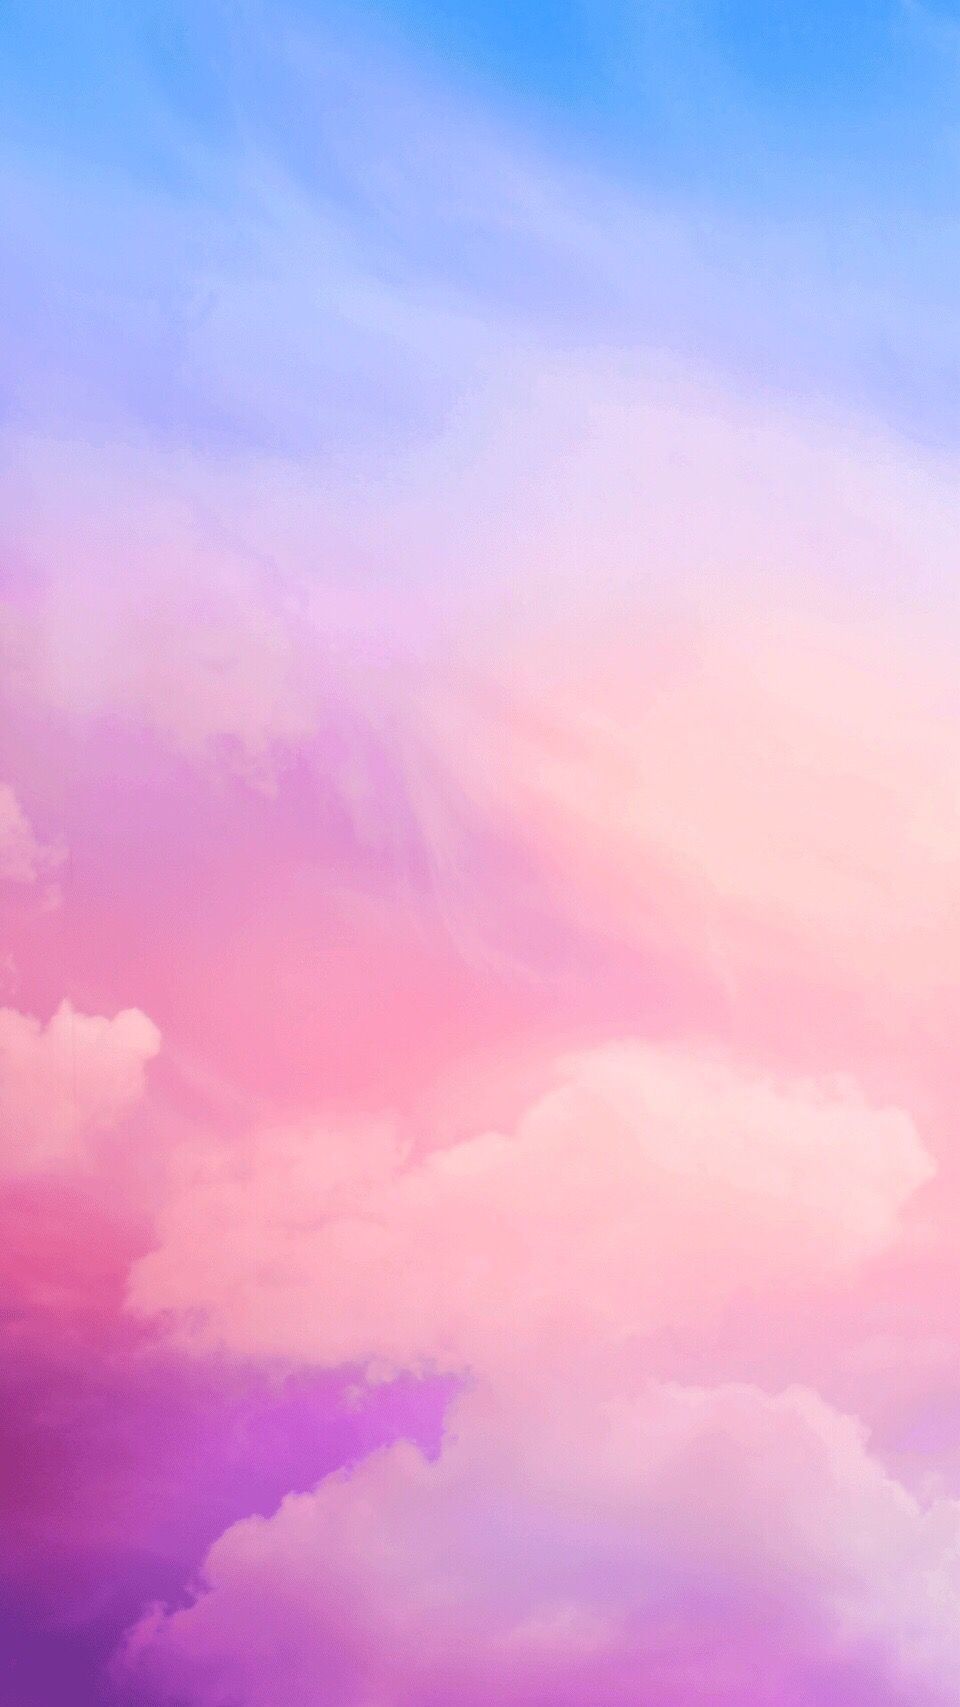 Pink clouds iPhone wallpaper (Dengan gambar)